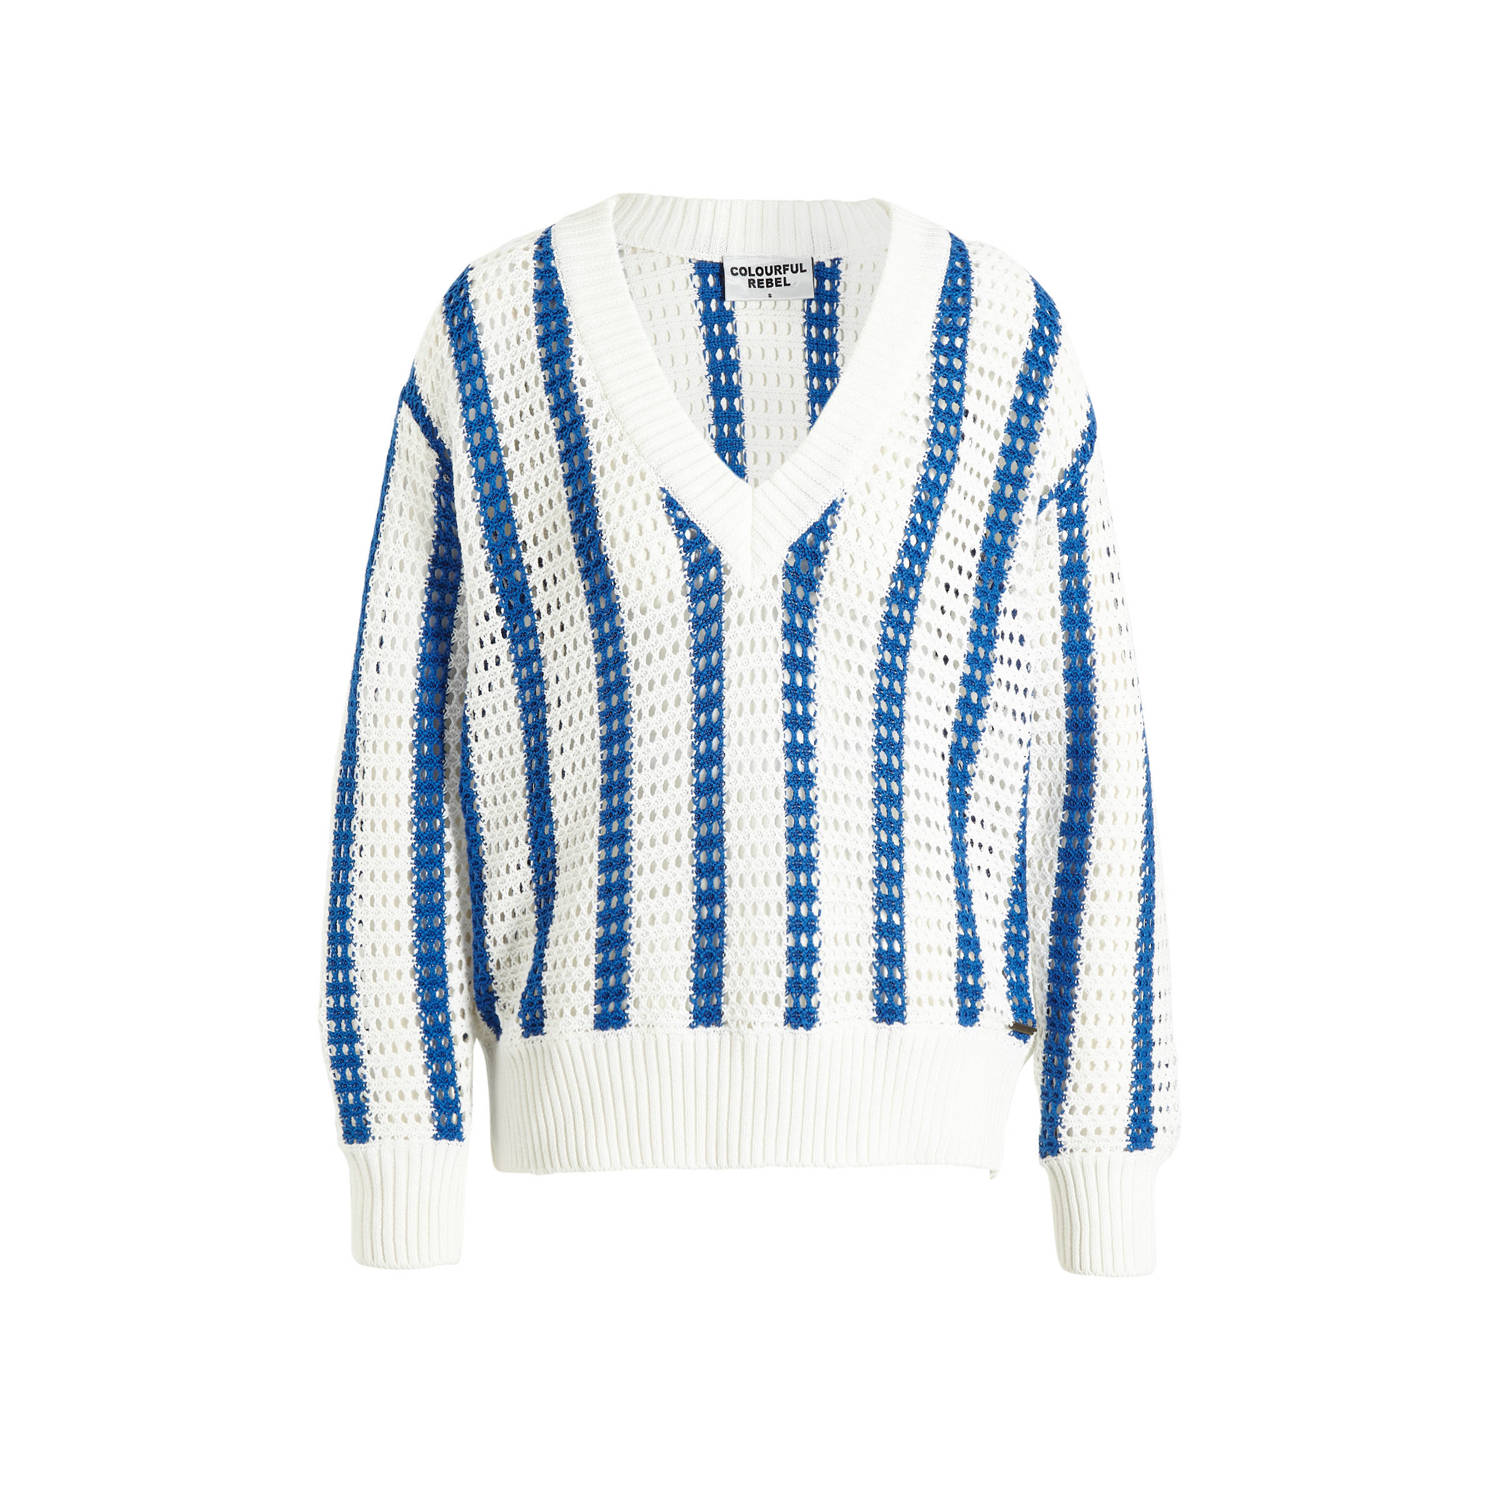 Colourful Rebel gestreepte semi-transparante crochet trui Lizza blauw wit